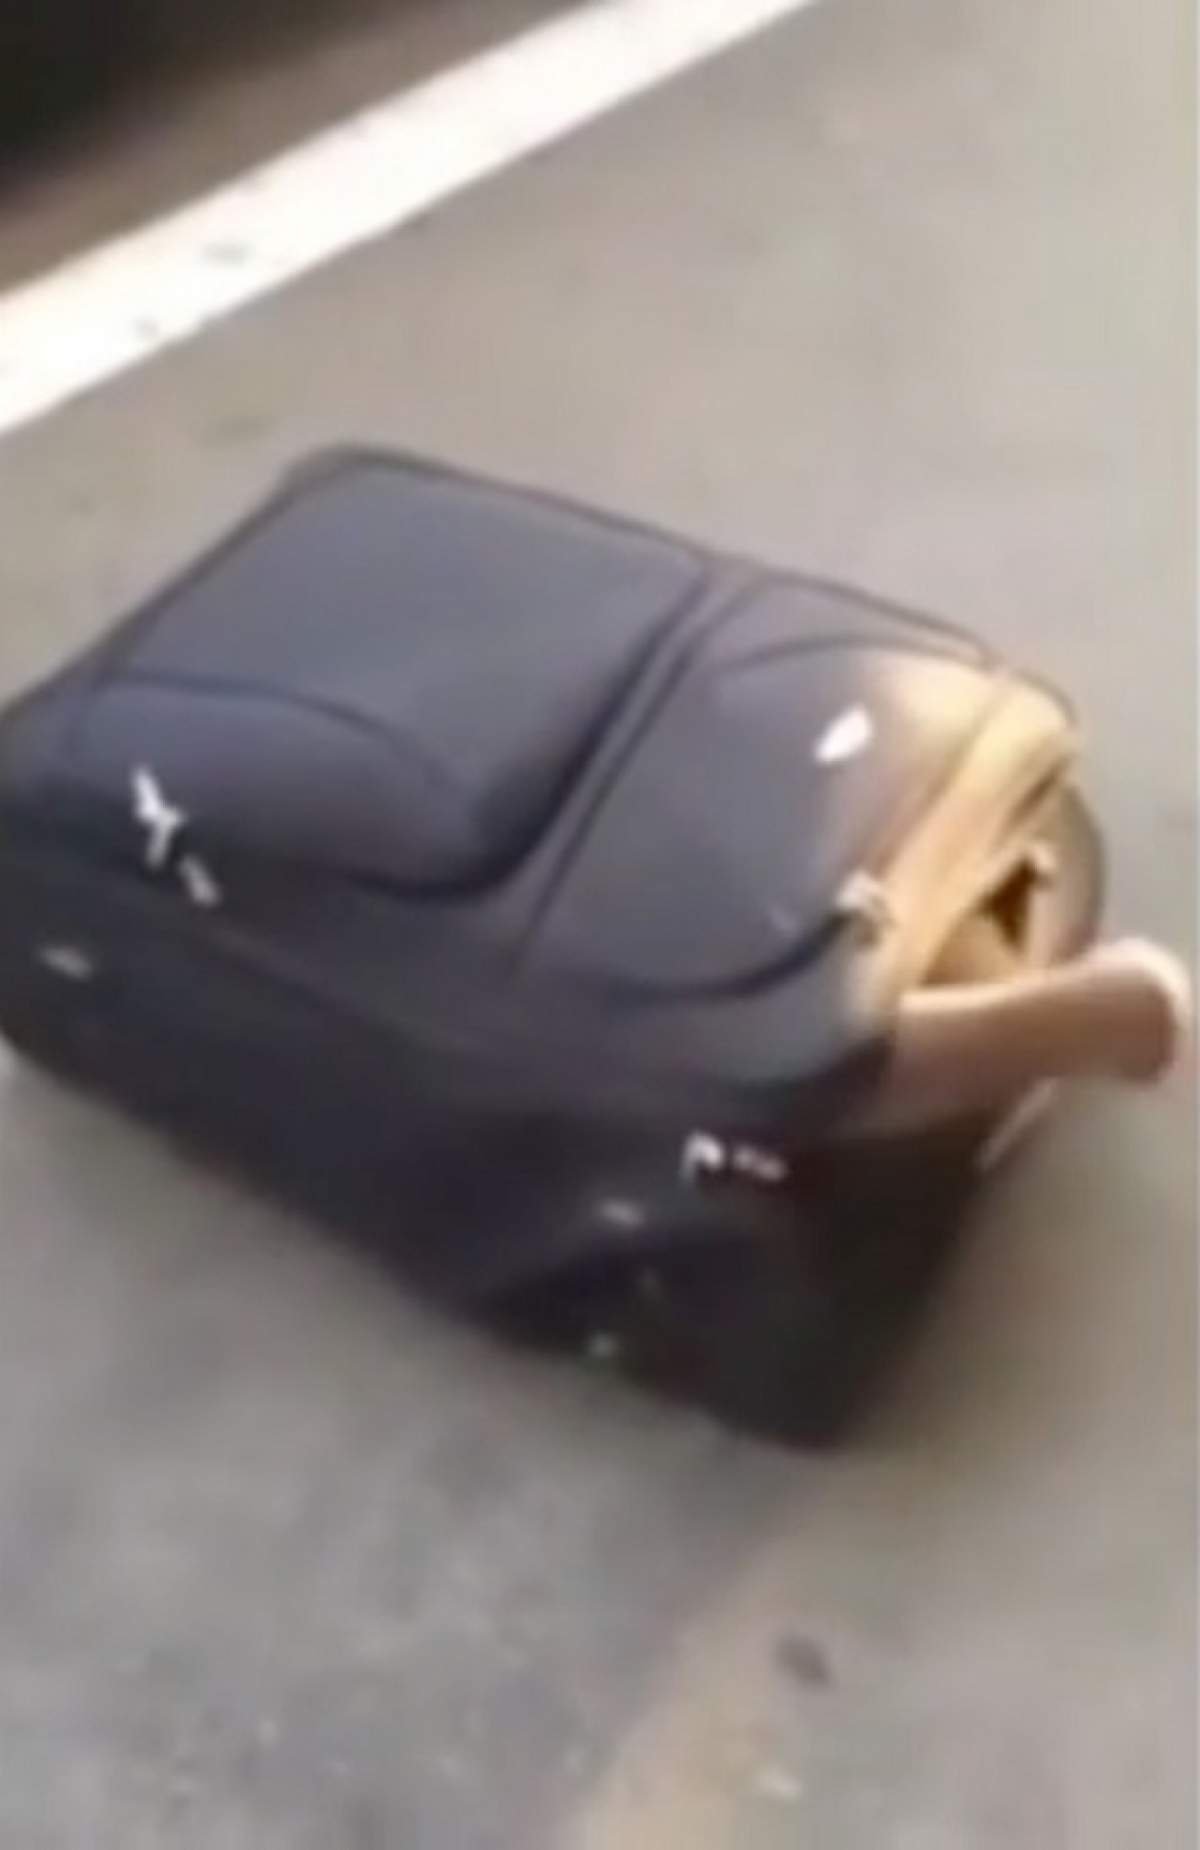 FOTO / Gest disperat! Ce avea un bărbat într-o valiză? Imaginile au stârnit reacţii în întreaga lume